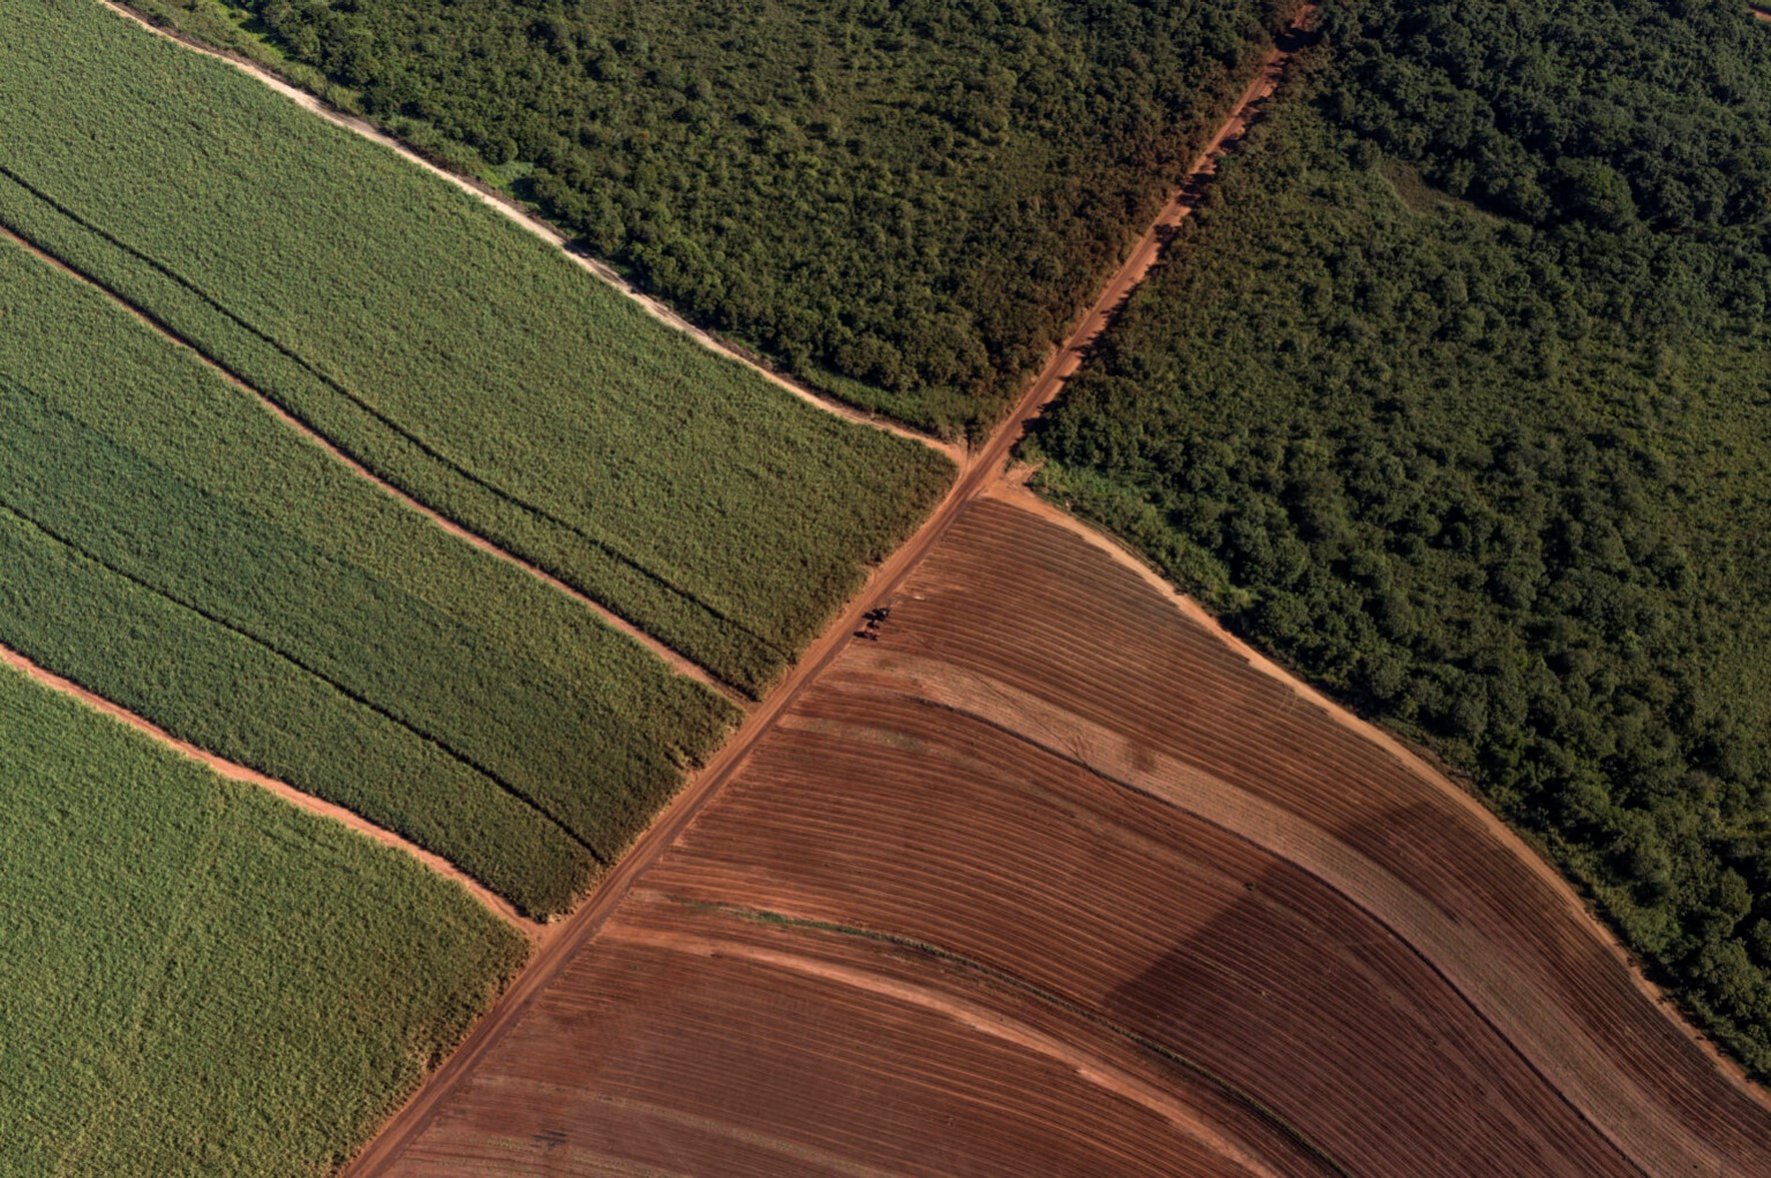 Agricultura e florestas serão chave para descarbonizar América Latina. Na imagem: Vista aérea de terreno agricultável próximo a região de floresta (Foto: Fenasucro)